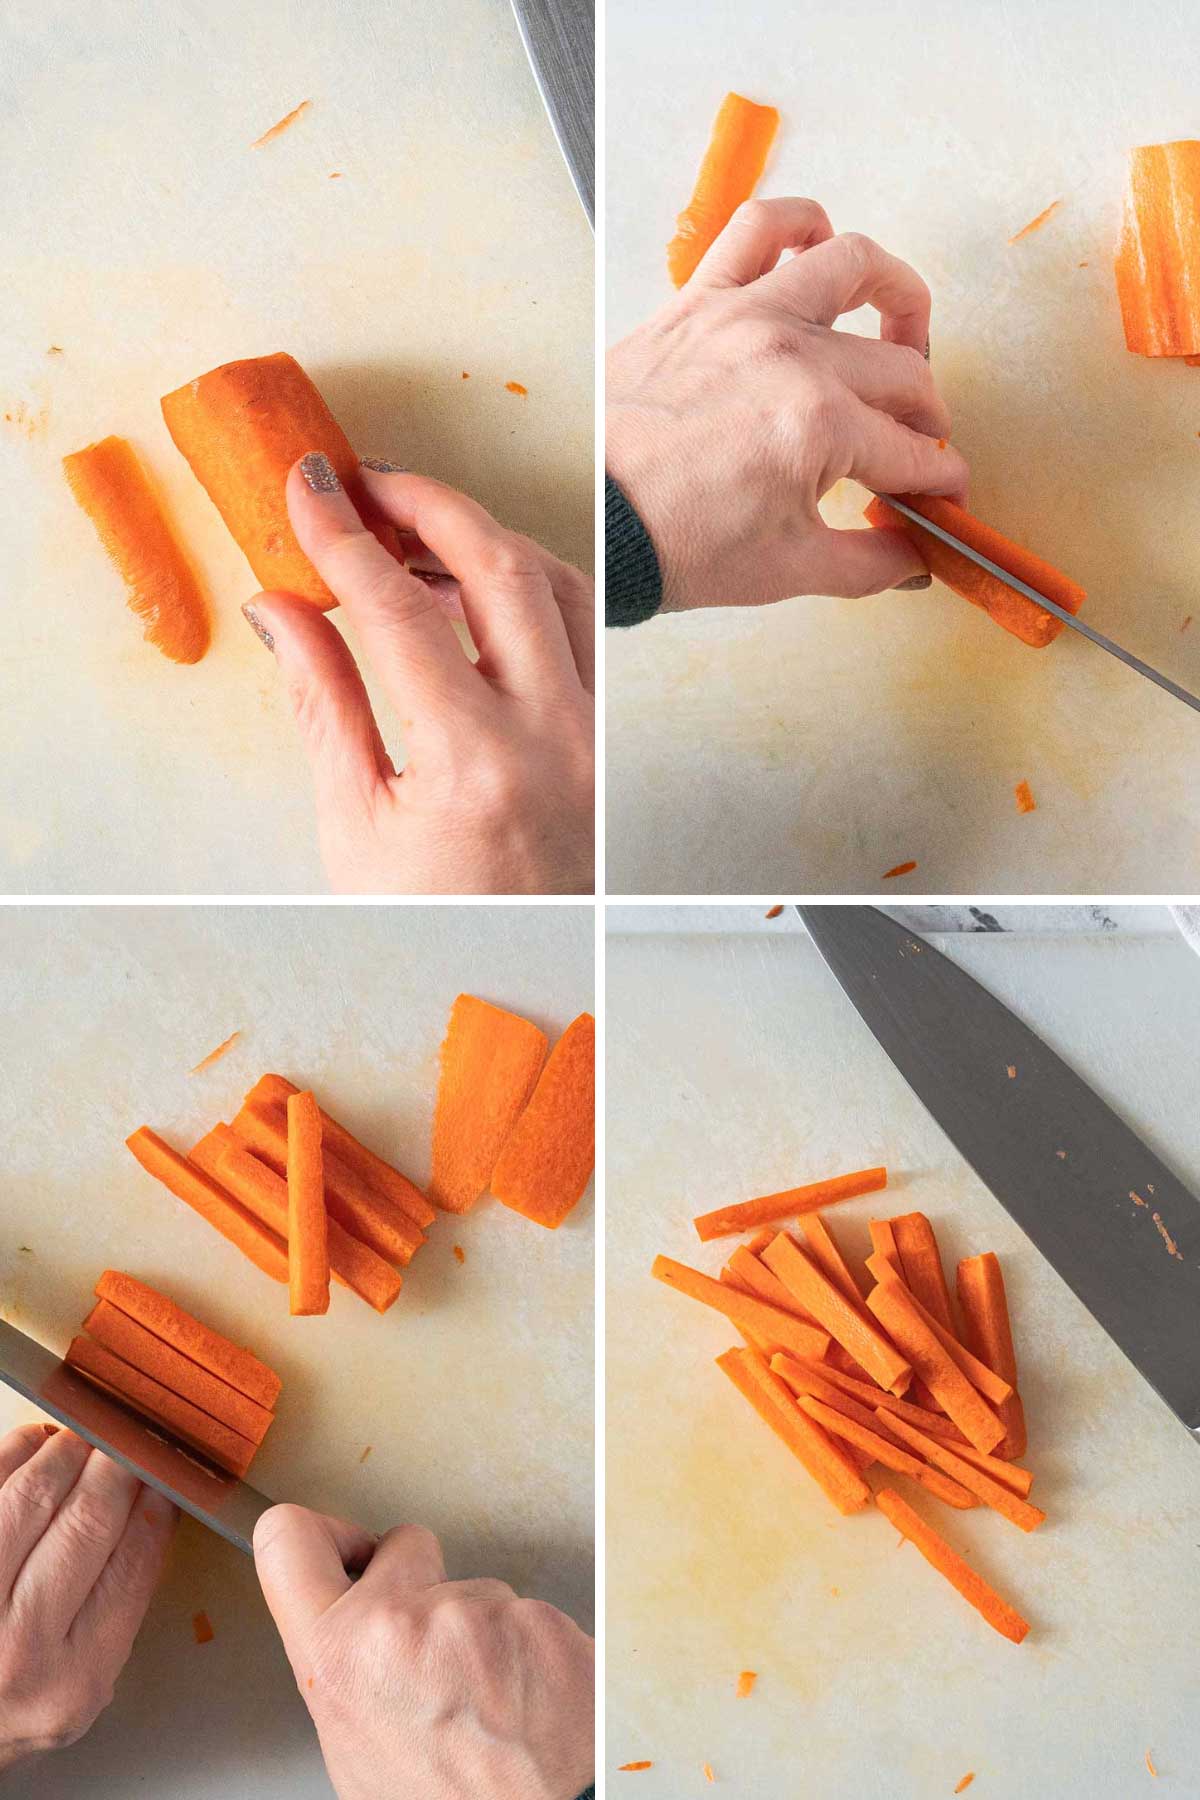 Cutting carrots into matchsticks.